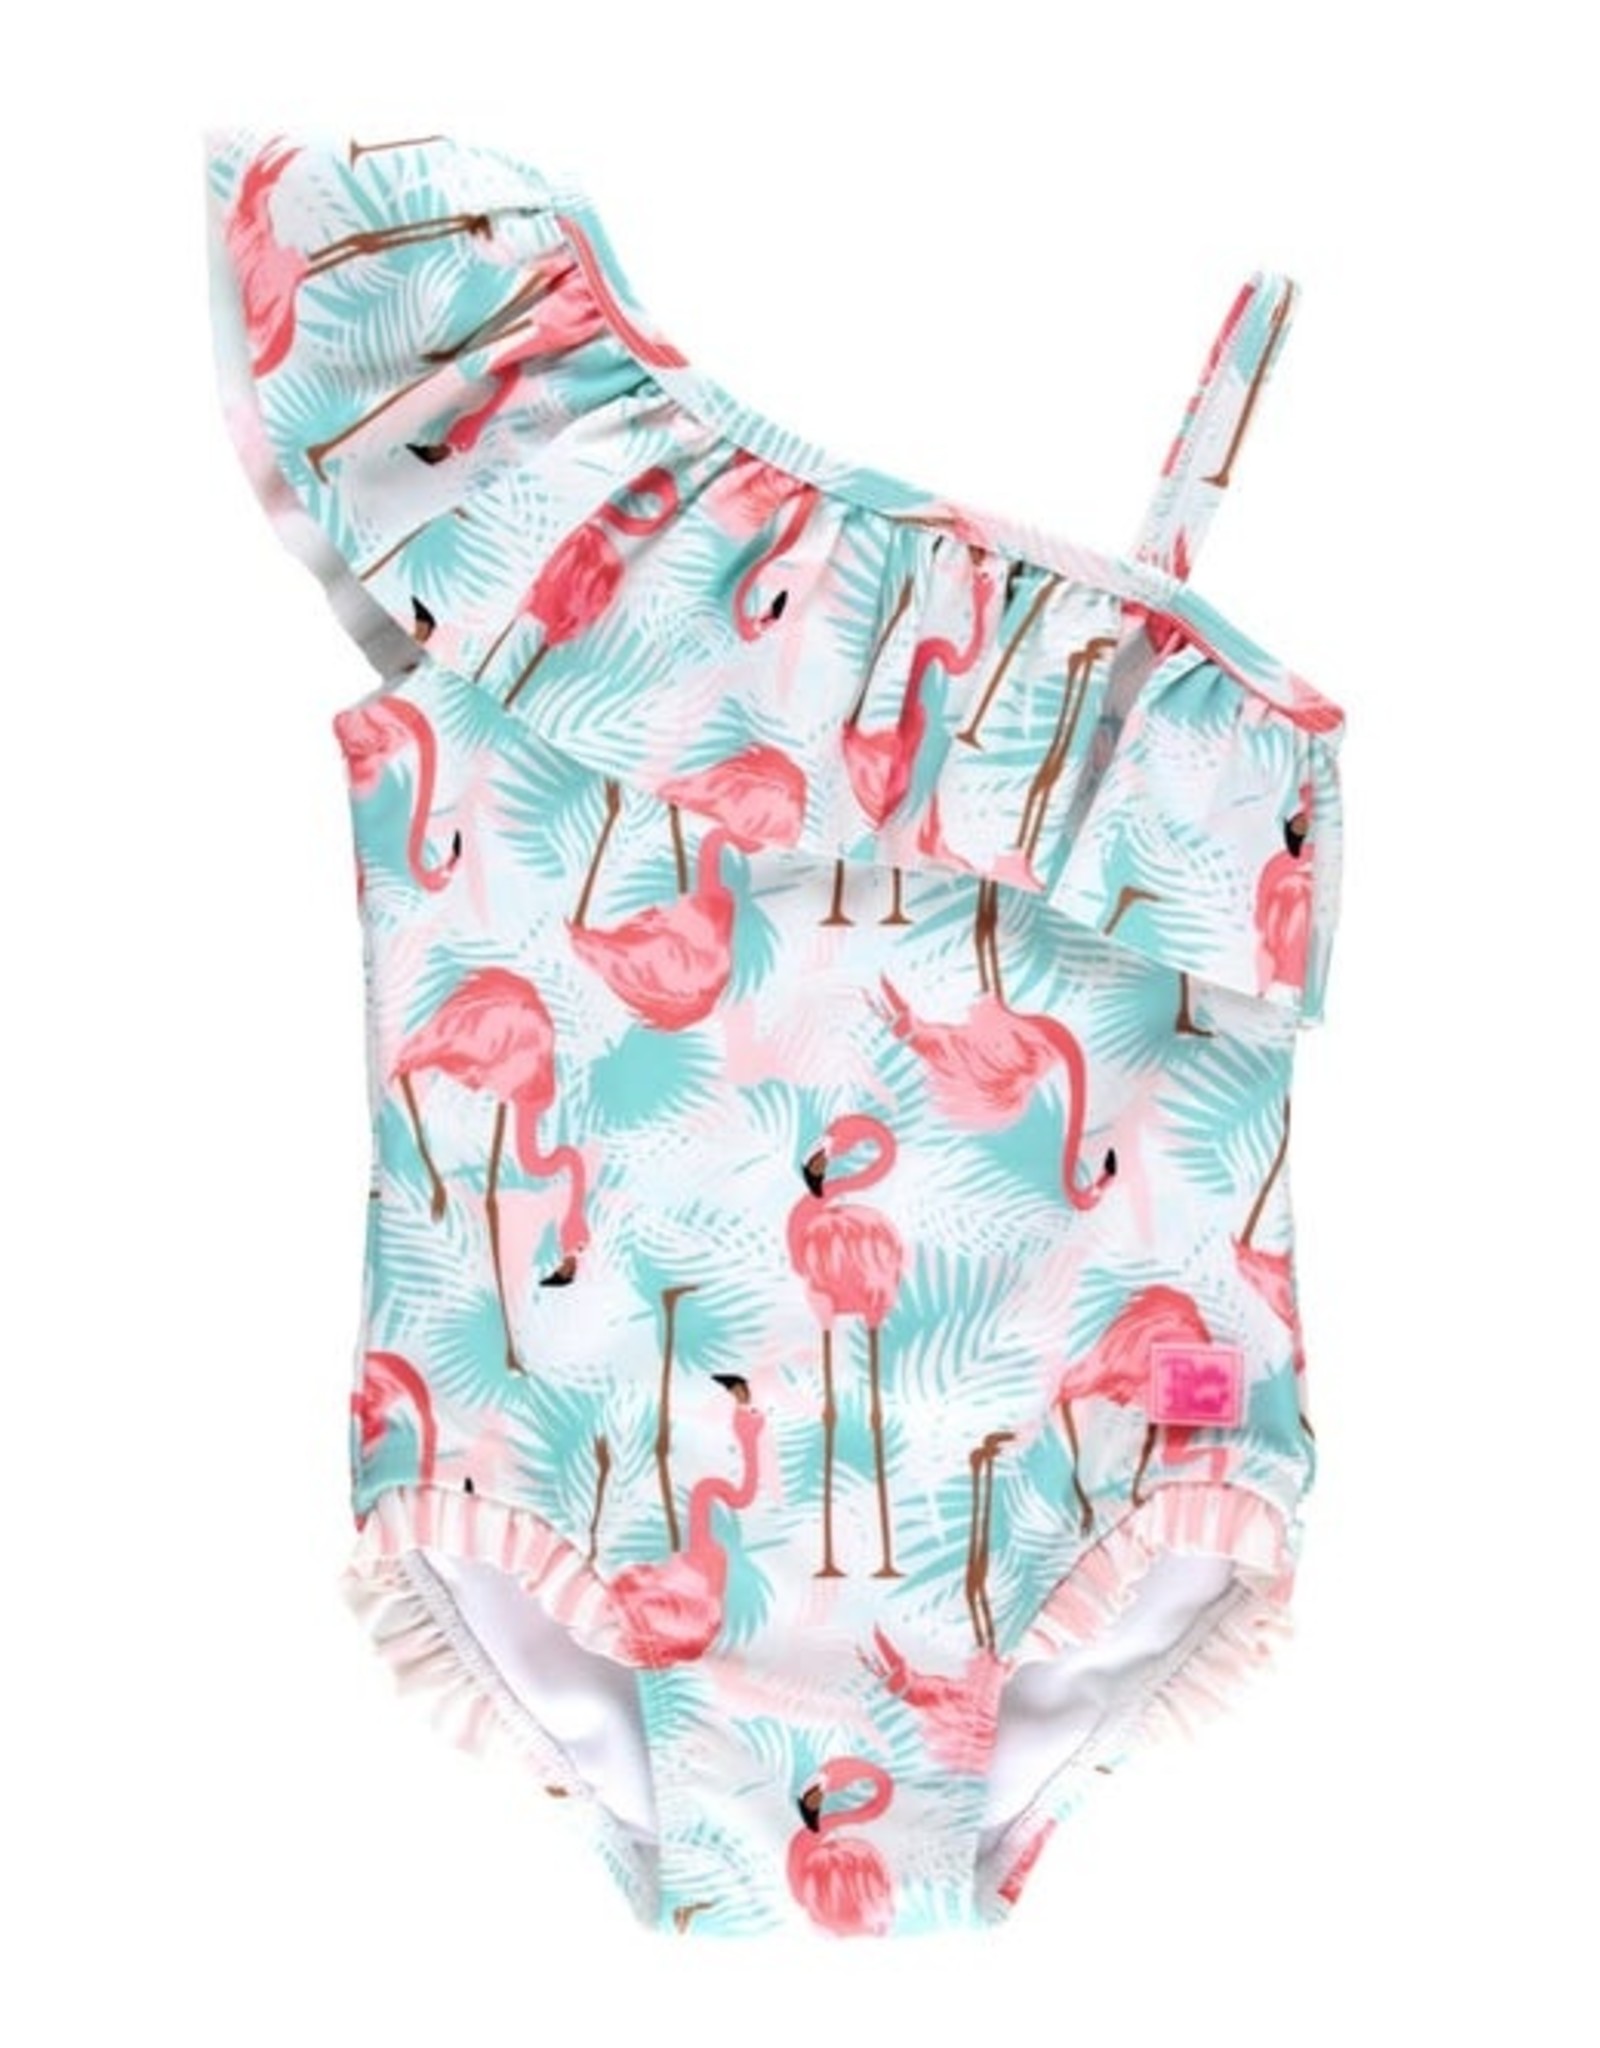 RuffleButts Vibrant Flamingo One Shoulder Ruffle Swimsuit